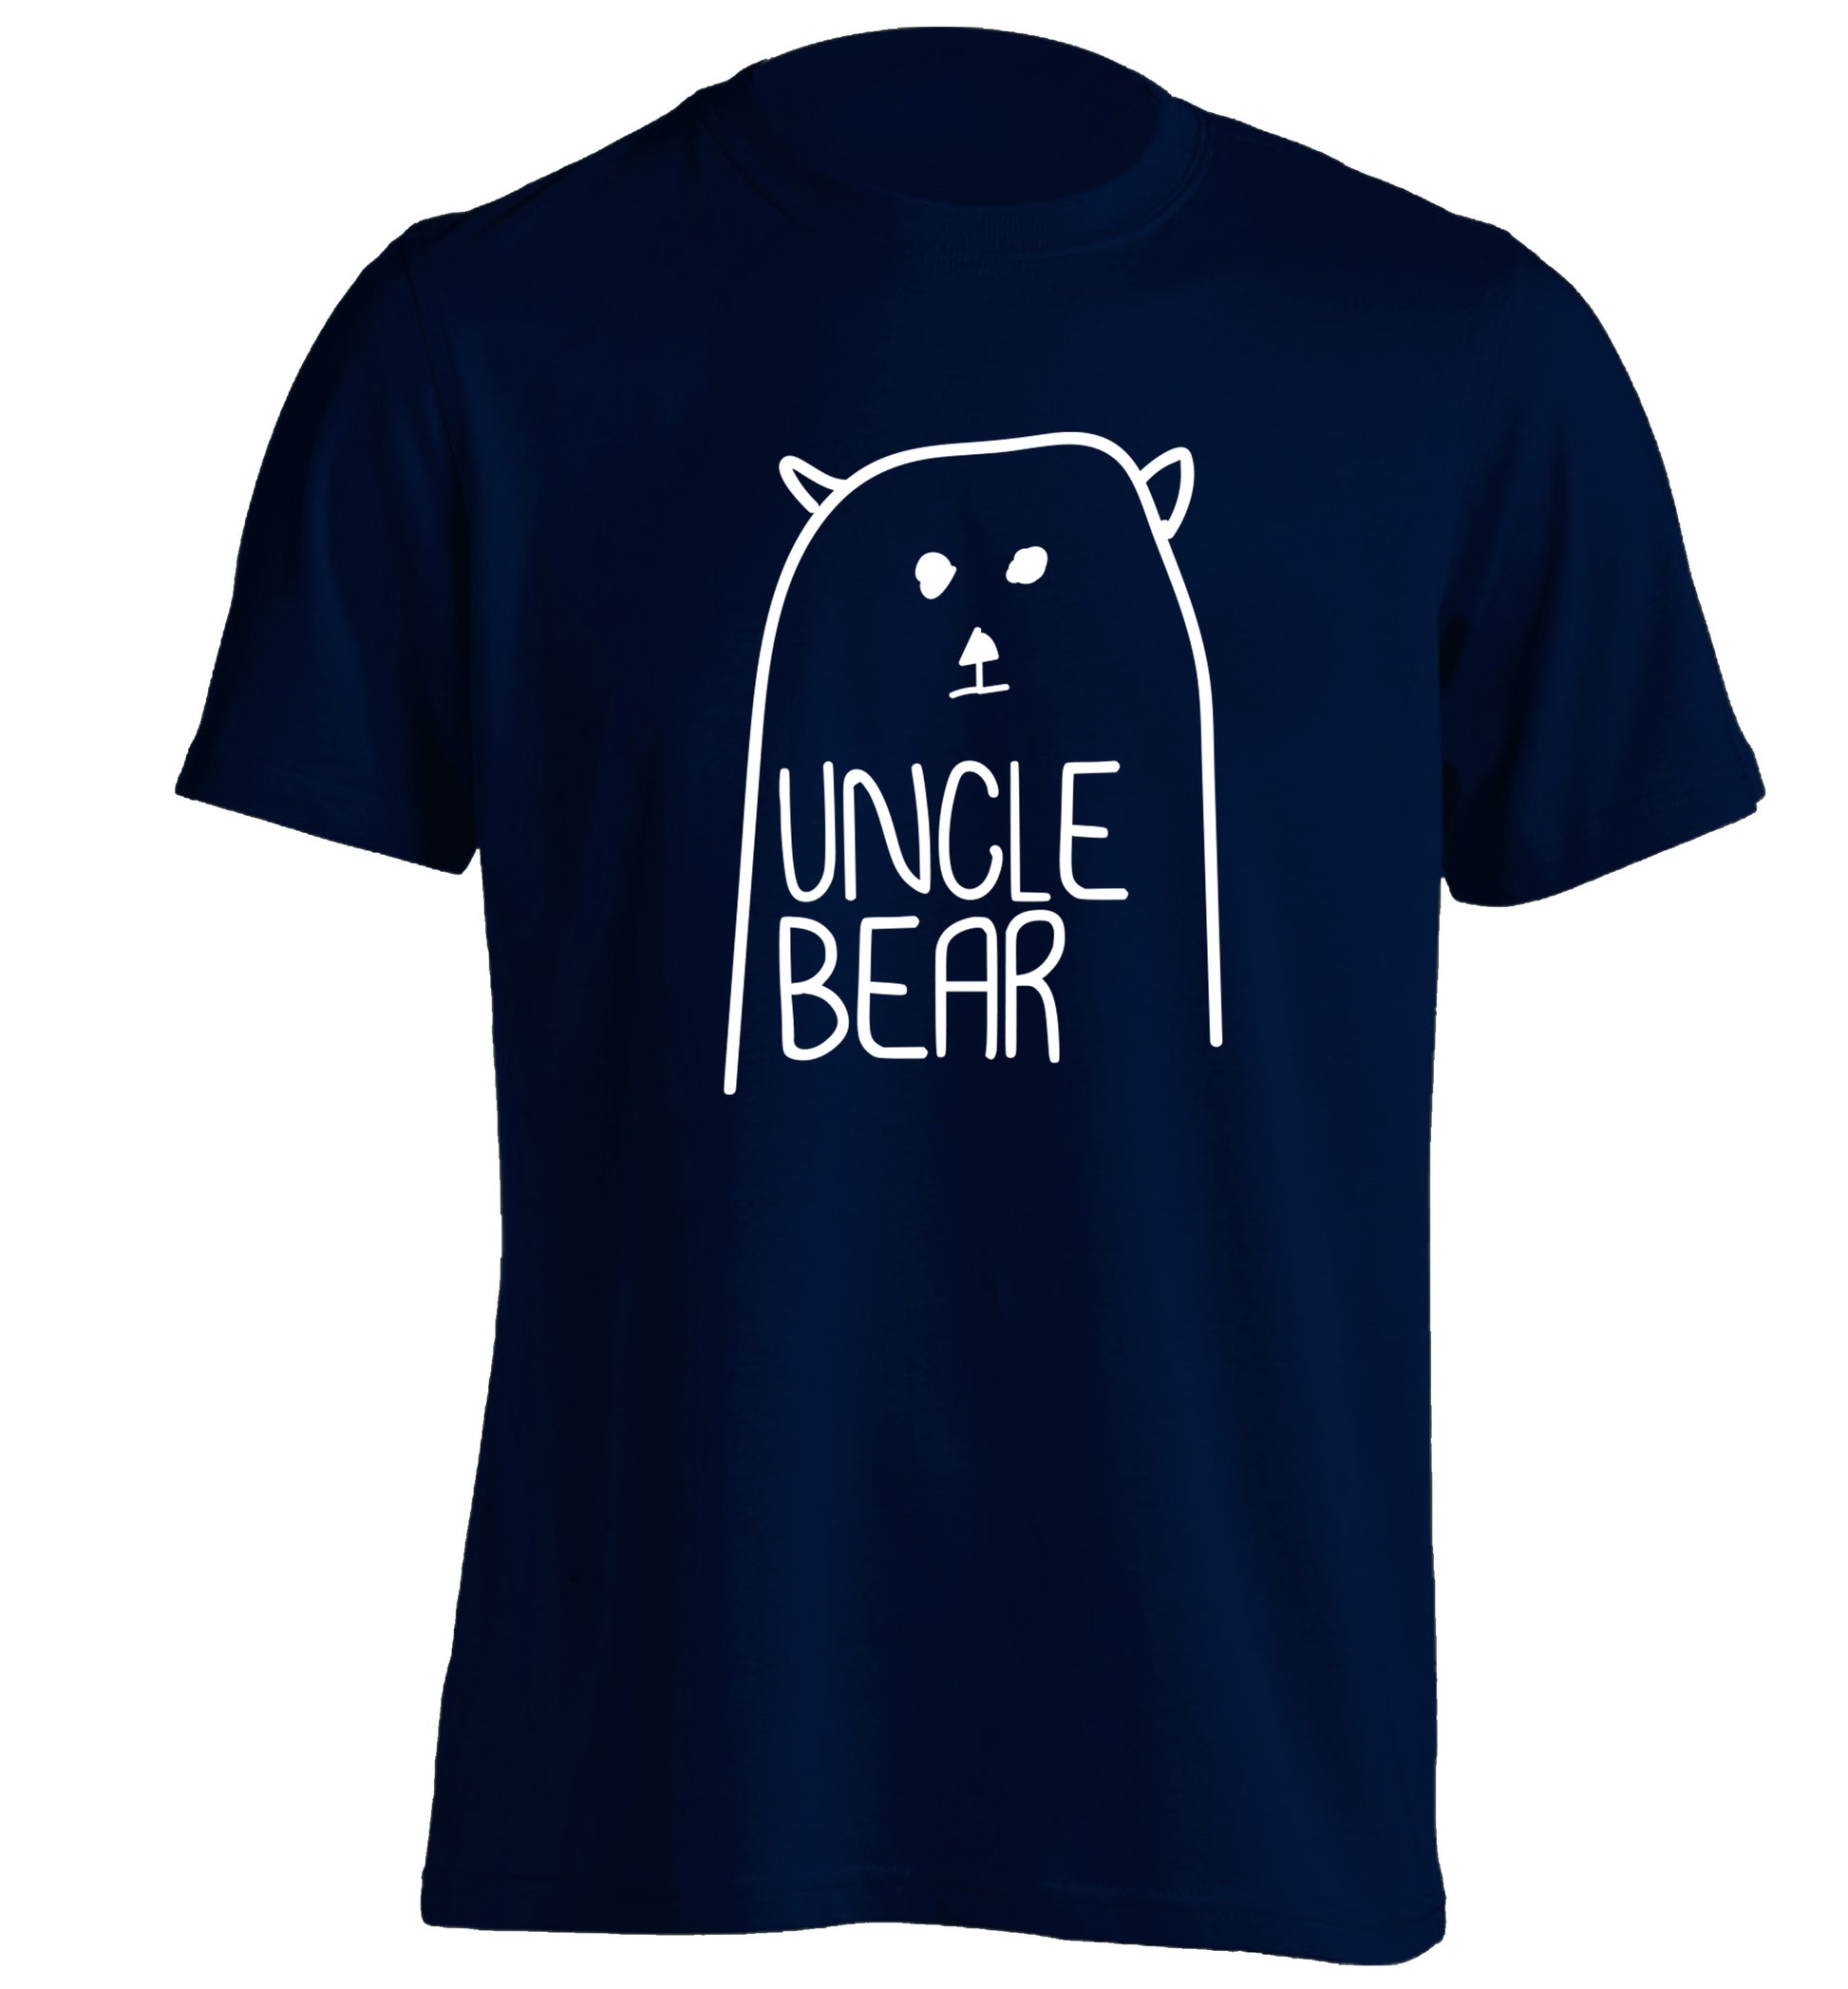 Uncle bear adults unisex navy Tshirt 2XL